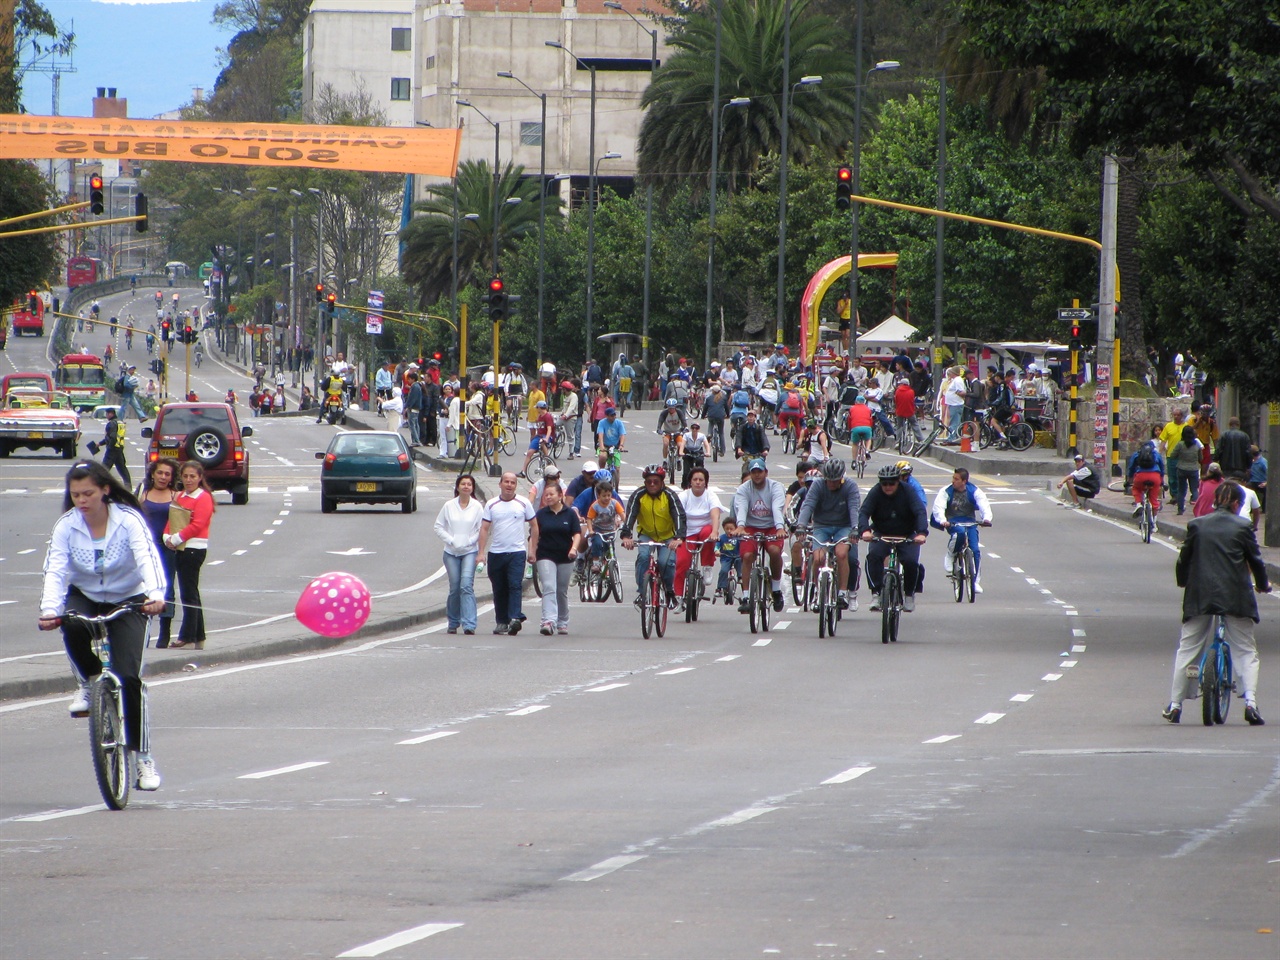 Ciclovia de domingo 일요일마다 보고타의 일부 도로는 자전거 도로가 된다.